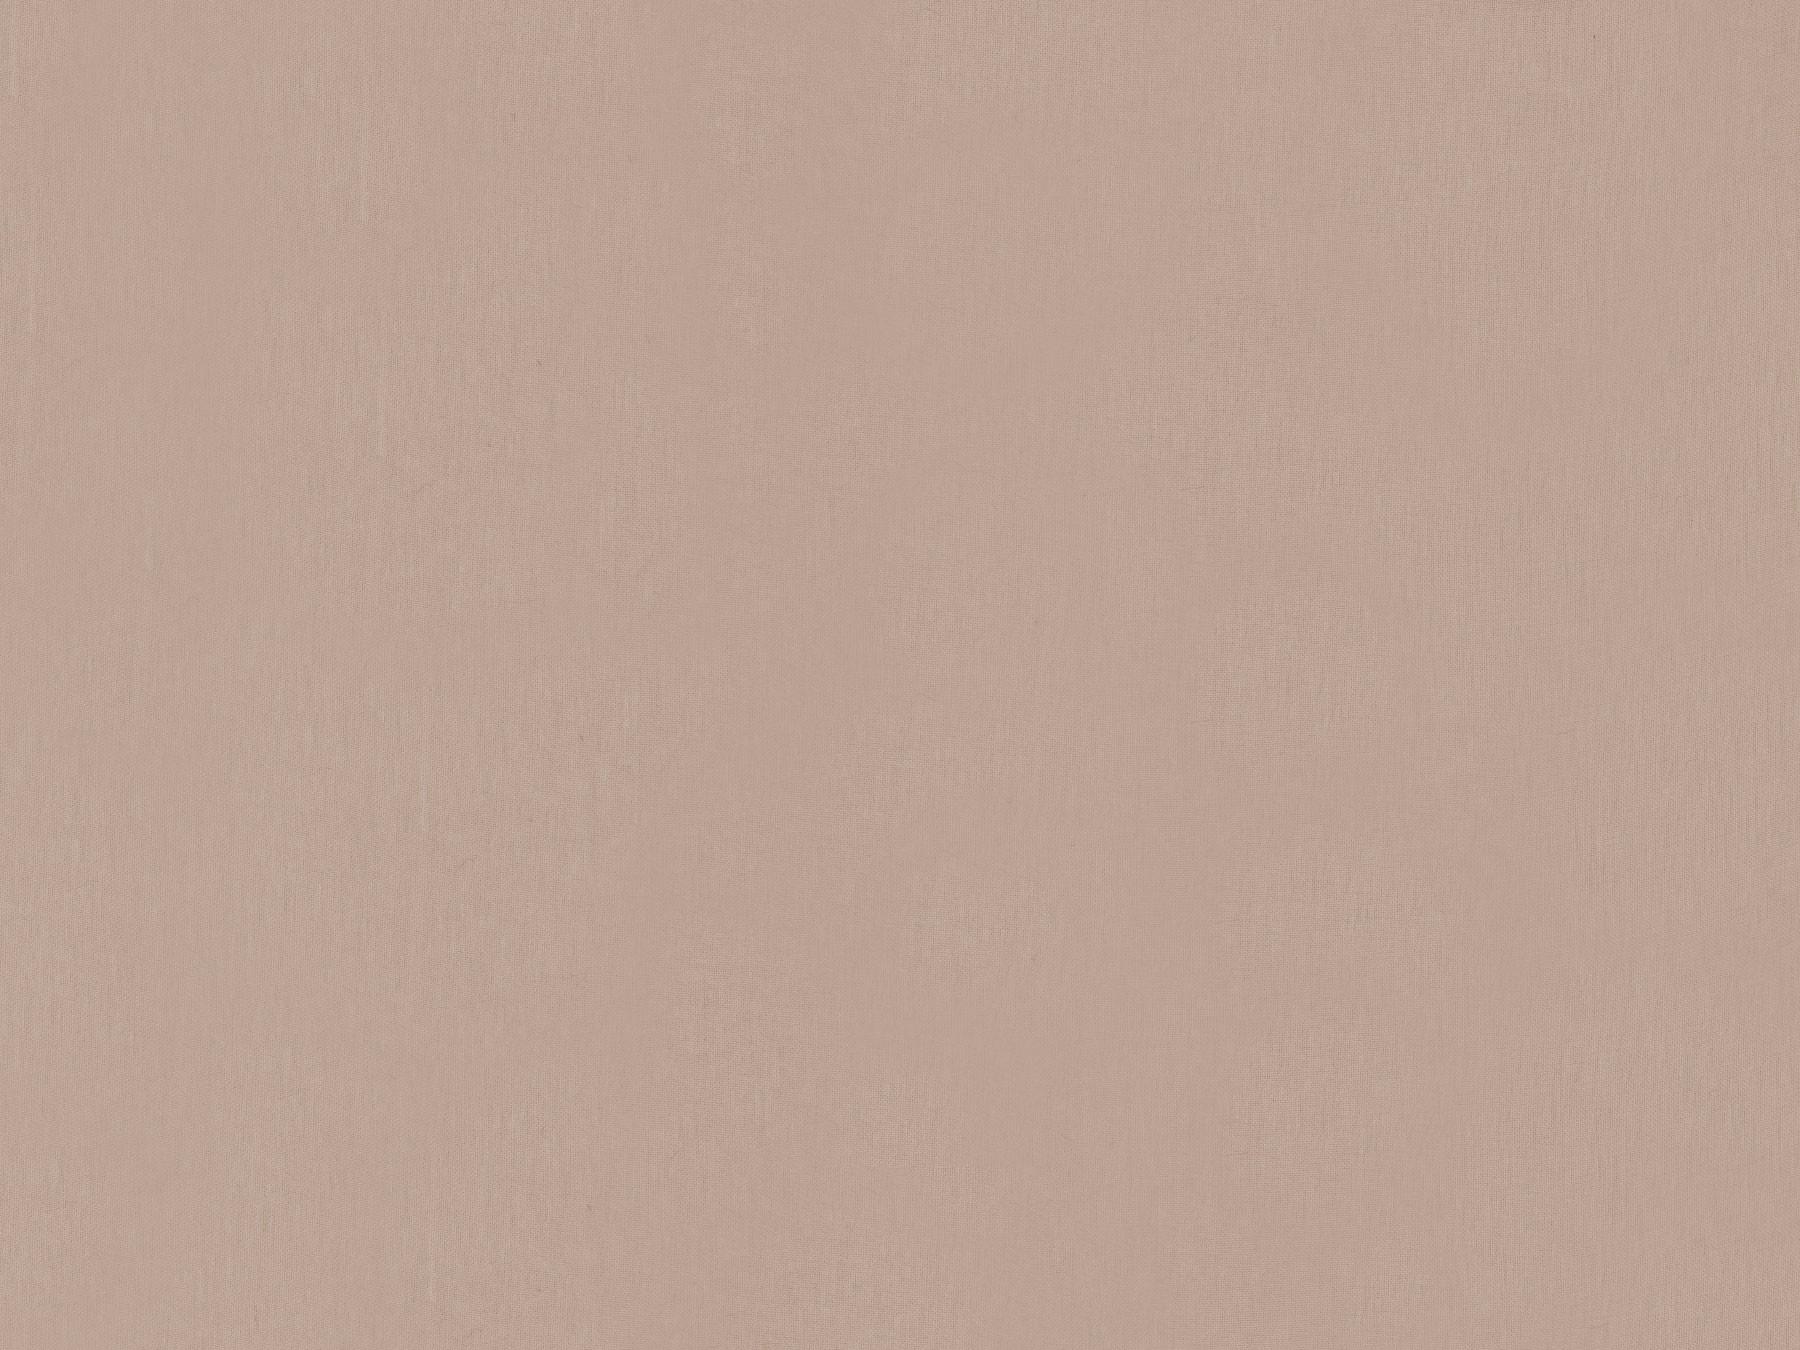 Светло коричневый серый цвет. Плёнка ПВХ кофе с молоком софт zt190. RAL 1019 сайдинг. Пастельный коричневый. Коричневый цвет однотонный.